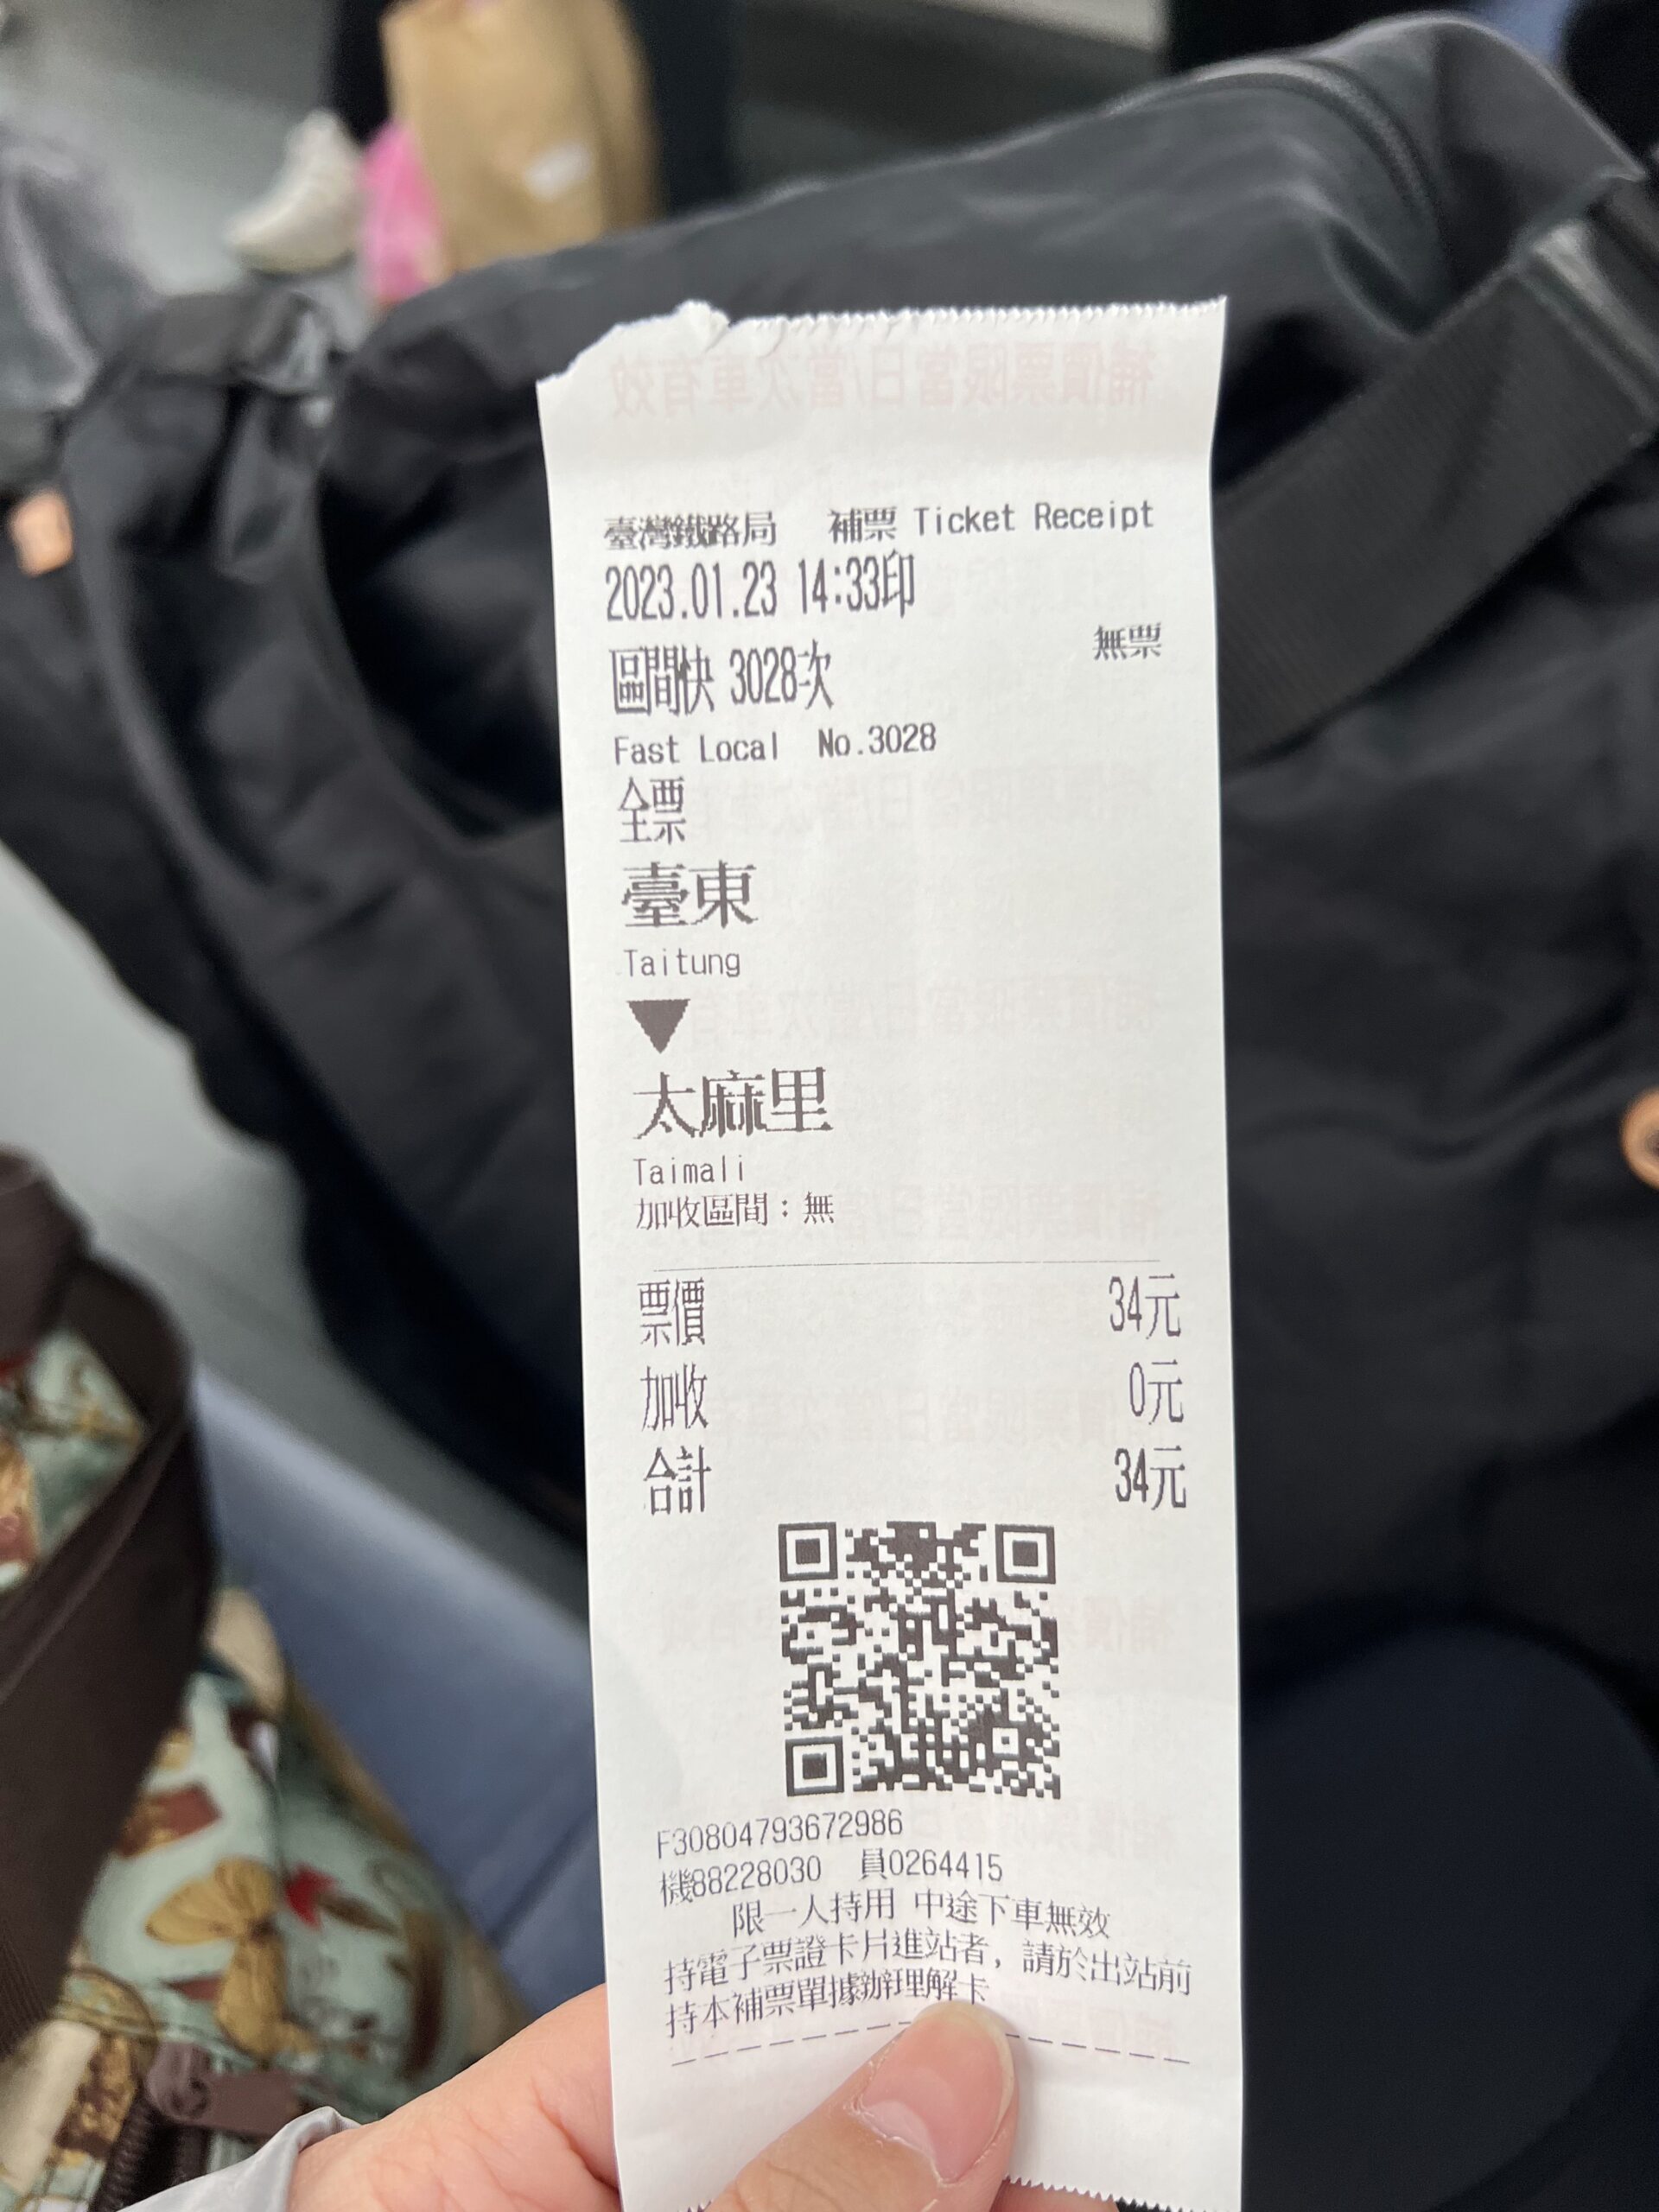 臺東車站轉區間快(3028)記得在車上補票